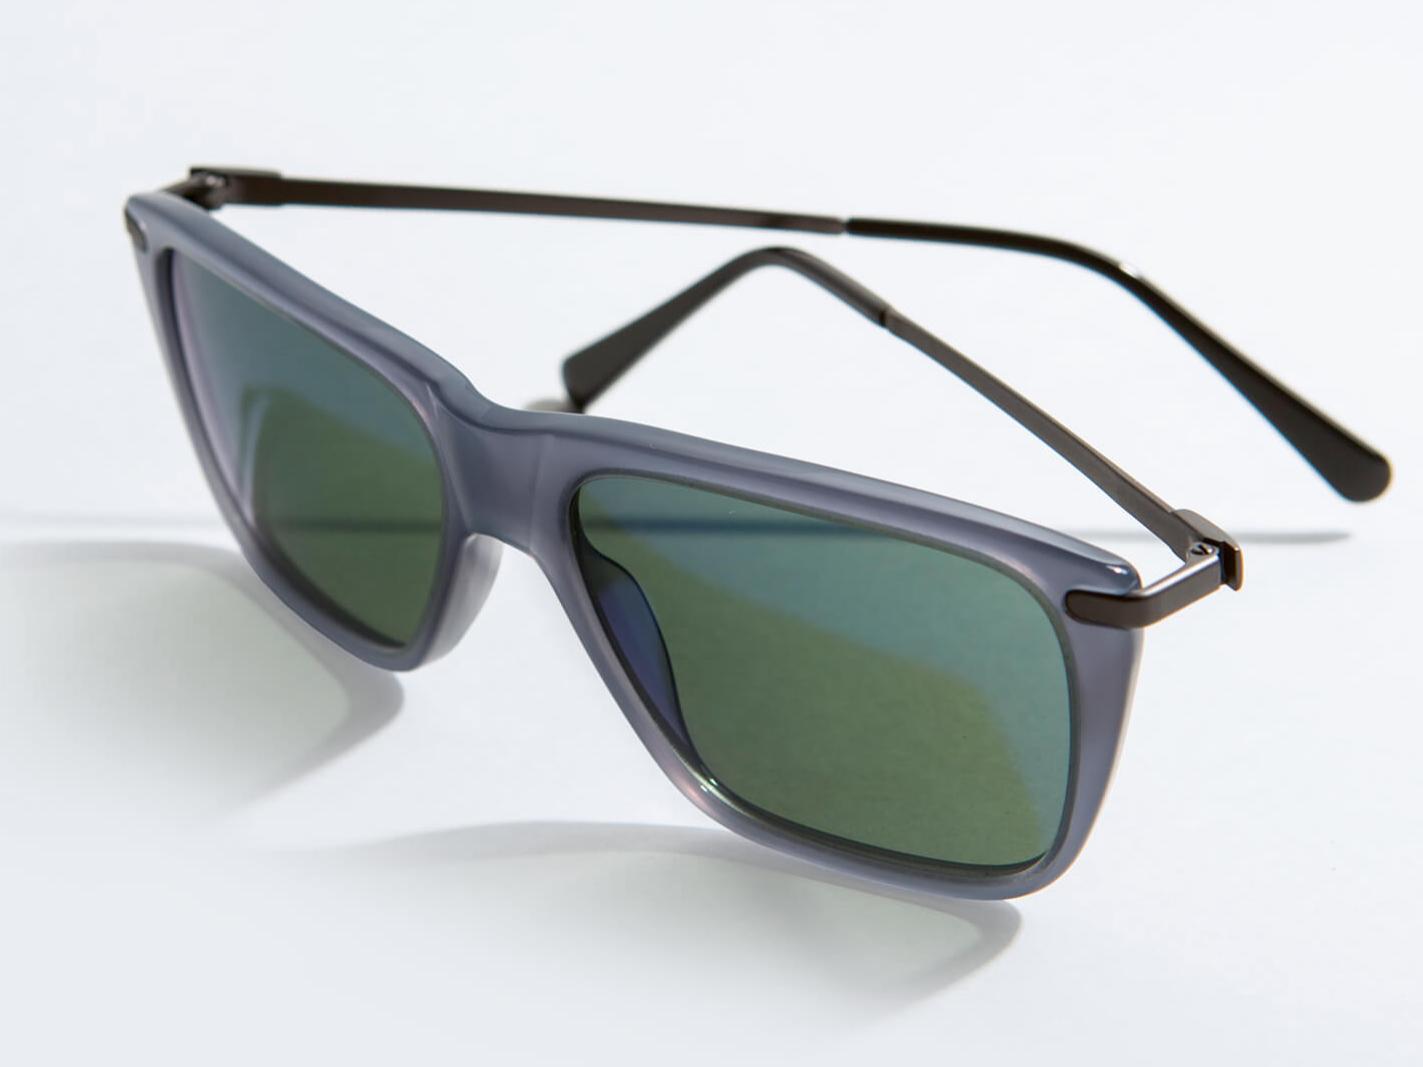 Solbriller for bilkjøring (middels til høy lysintensitet)